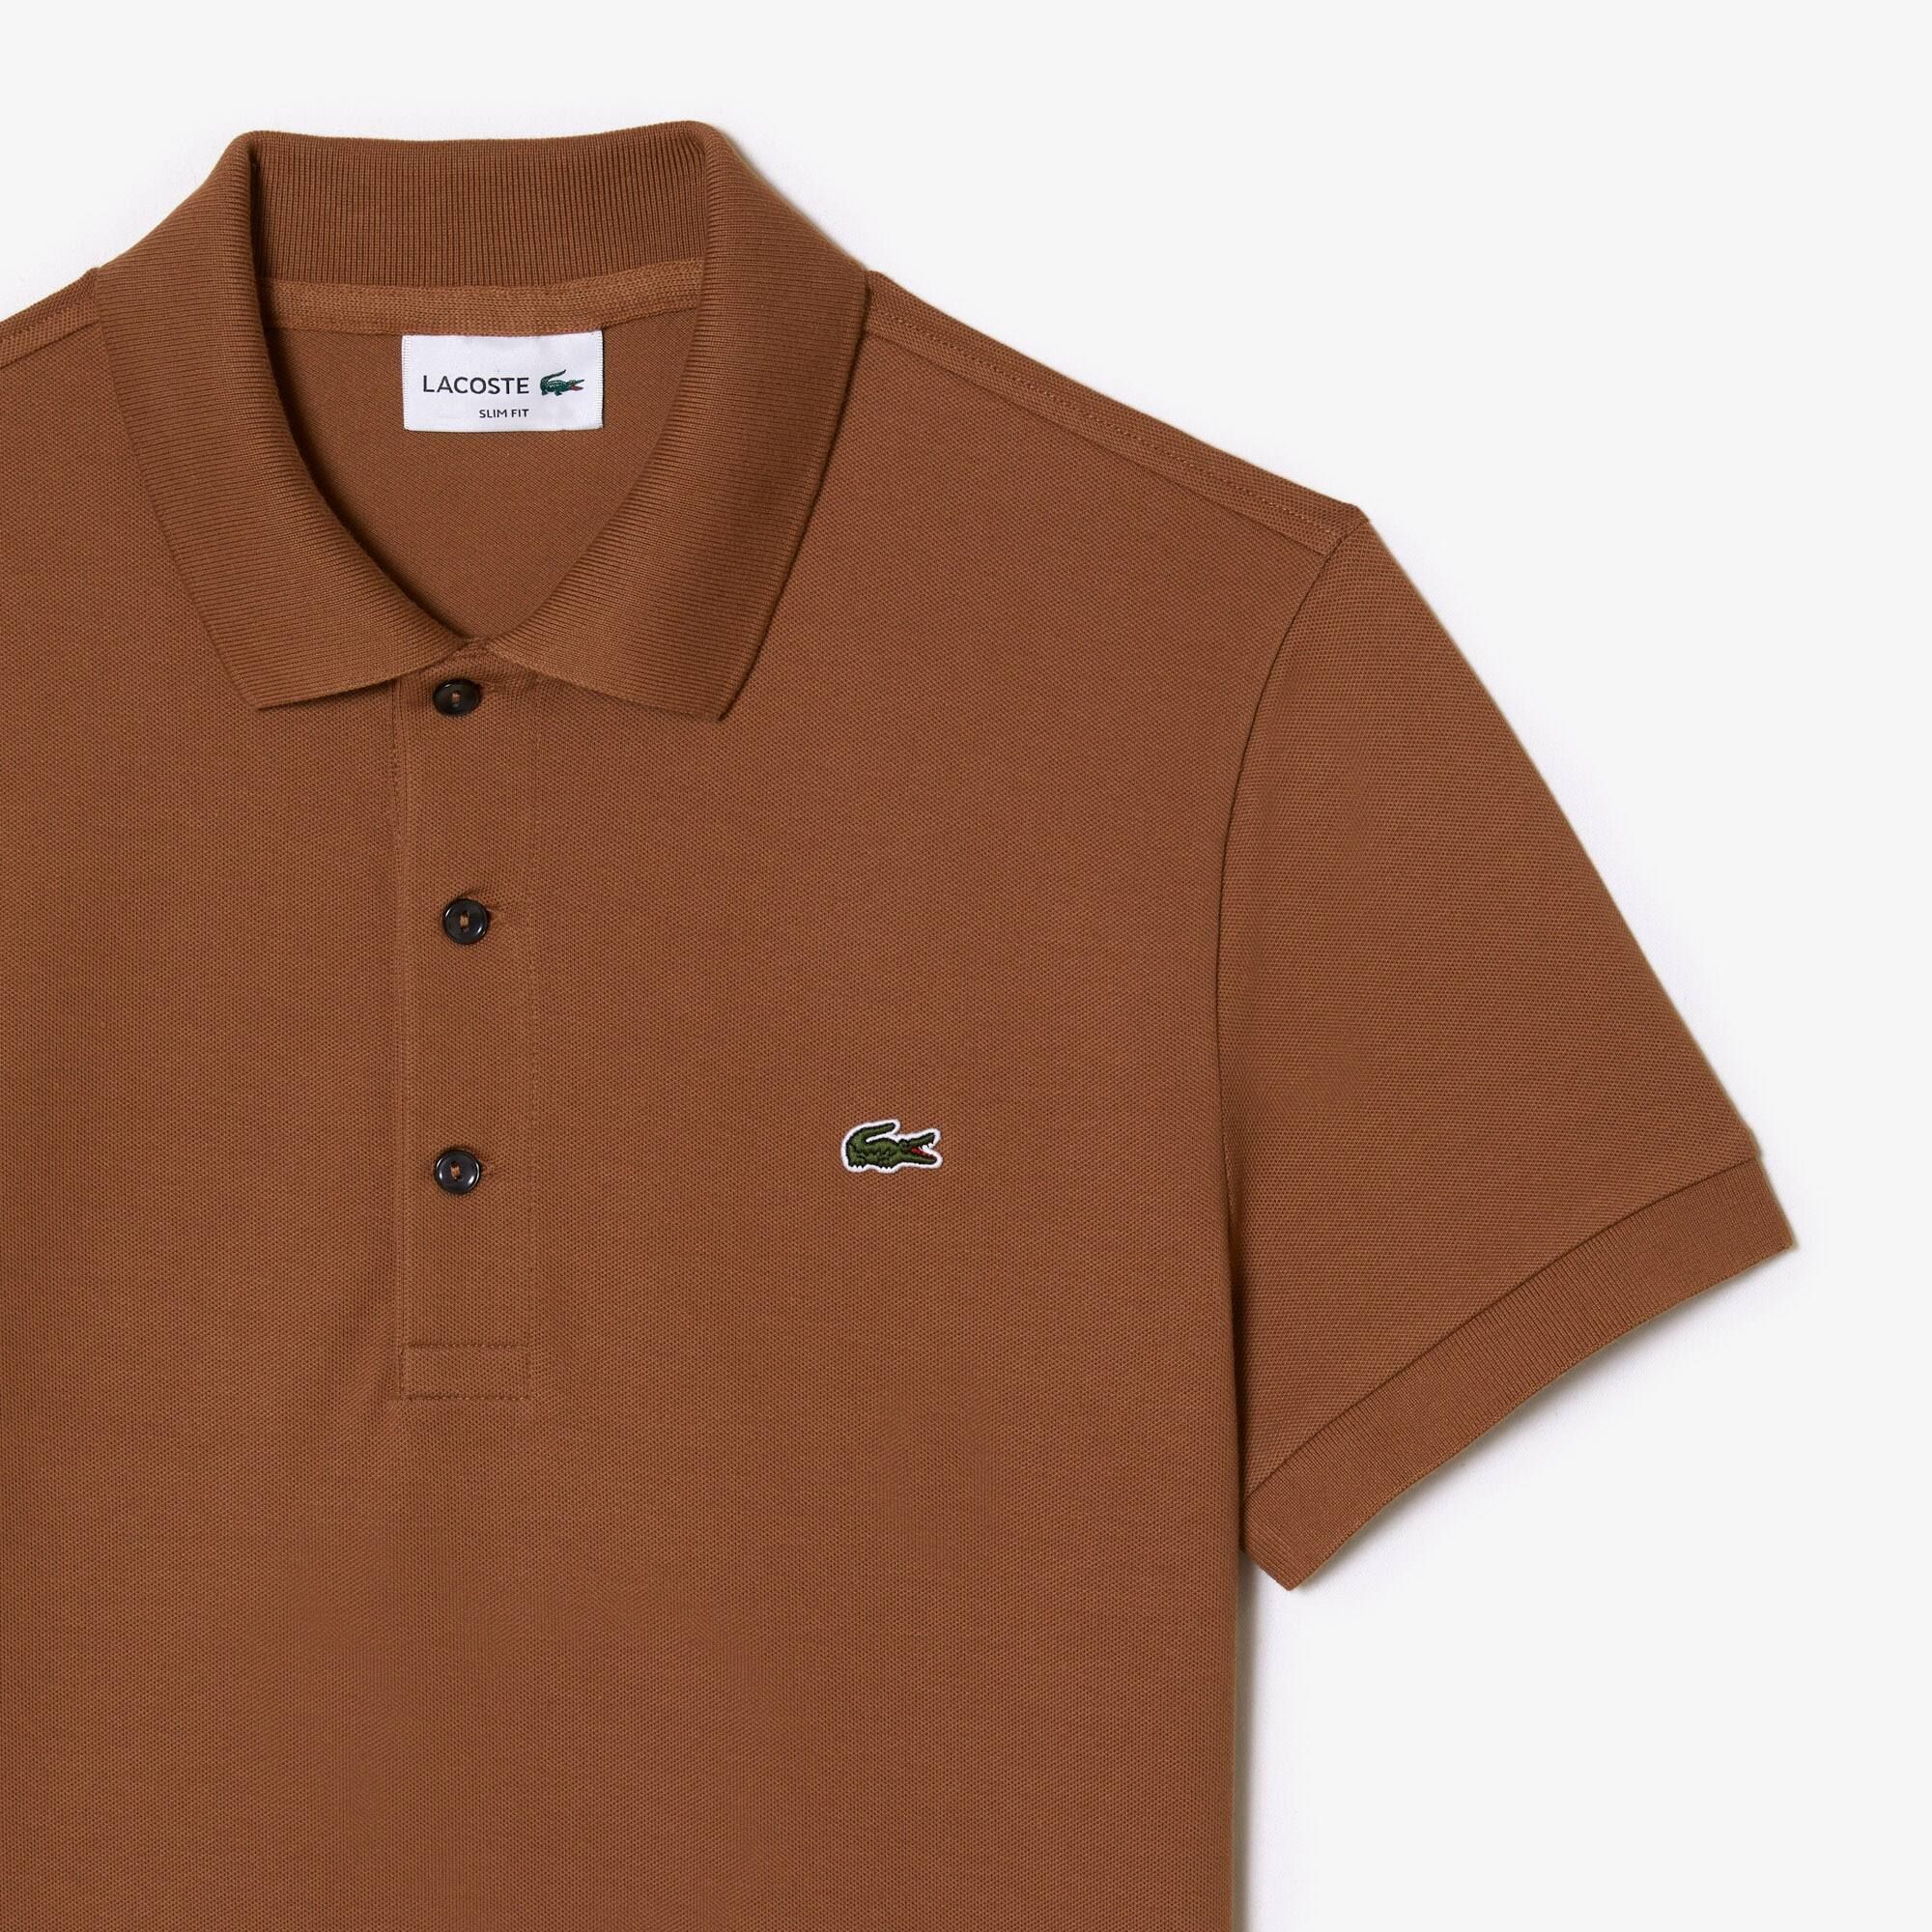  Lacoste Slim Fit Stretch Cotton Piqué Polo Shirt - Light Brown 